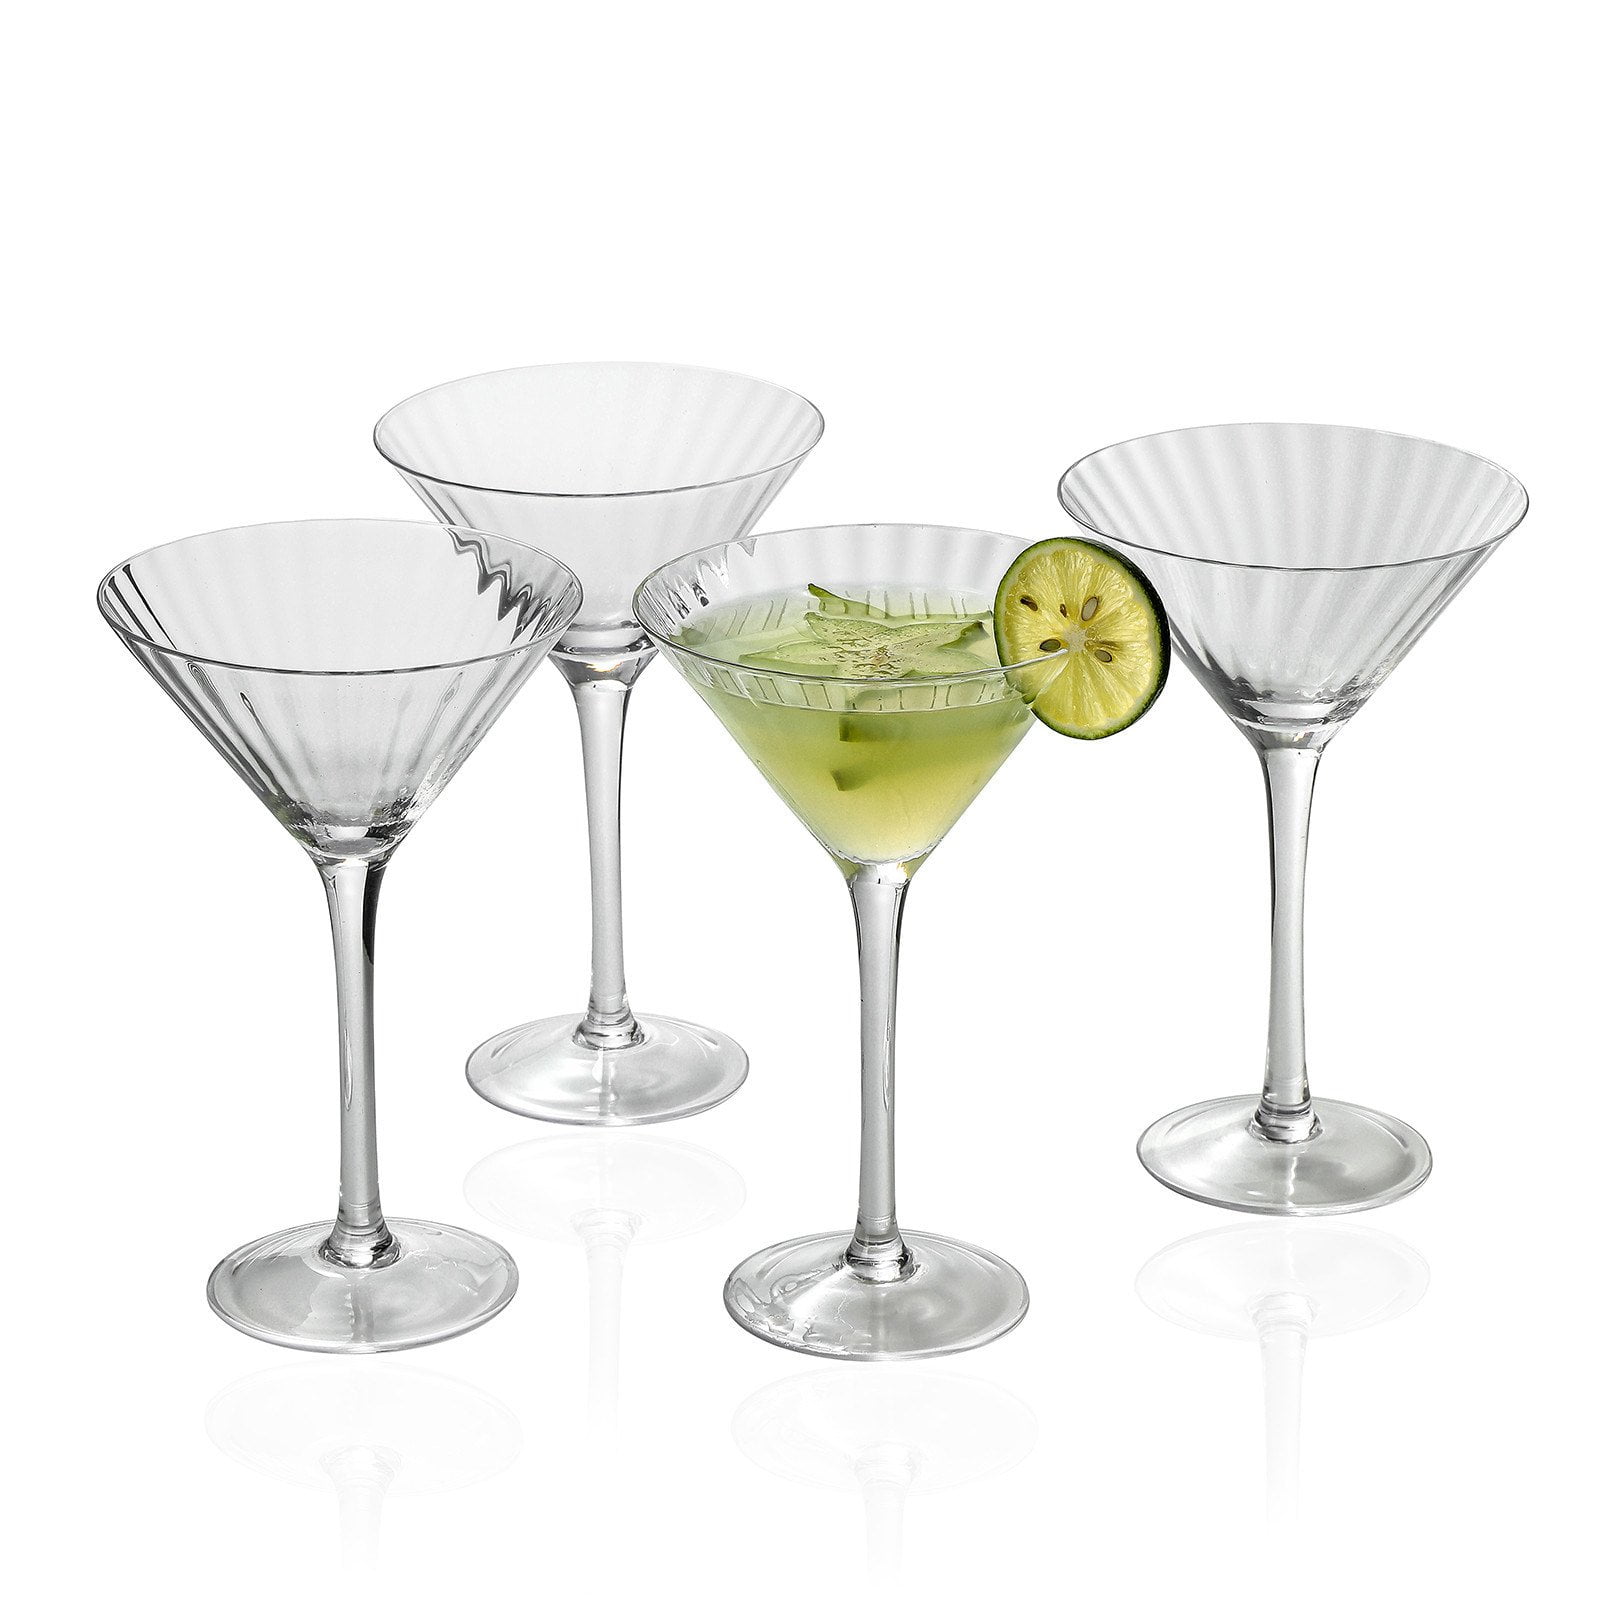 Volarium Martini Glasses Set of 4, Classics 4 Piece